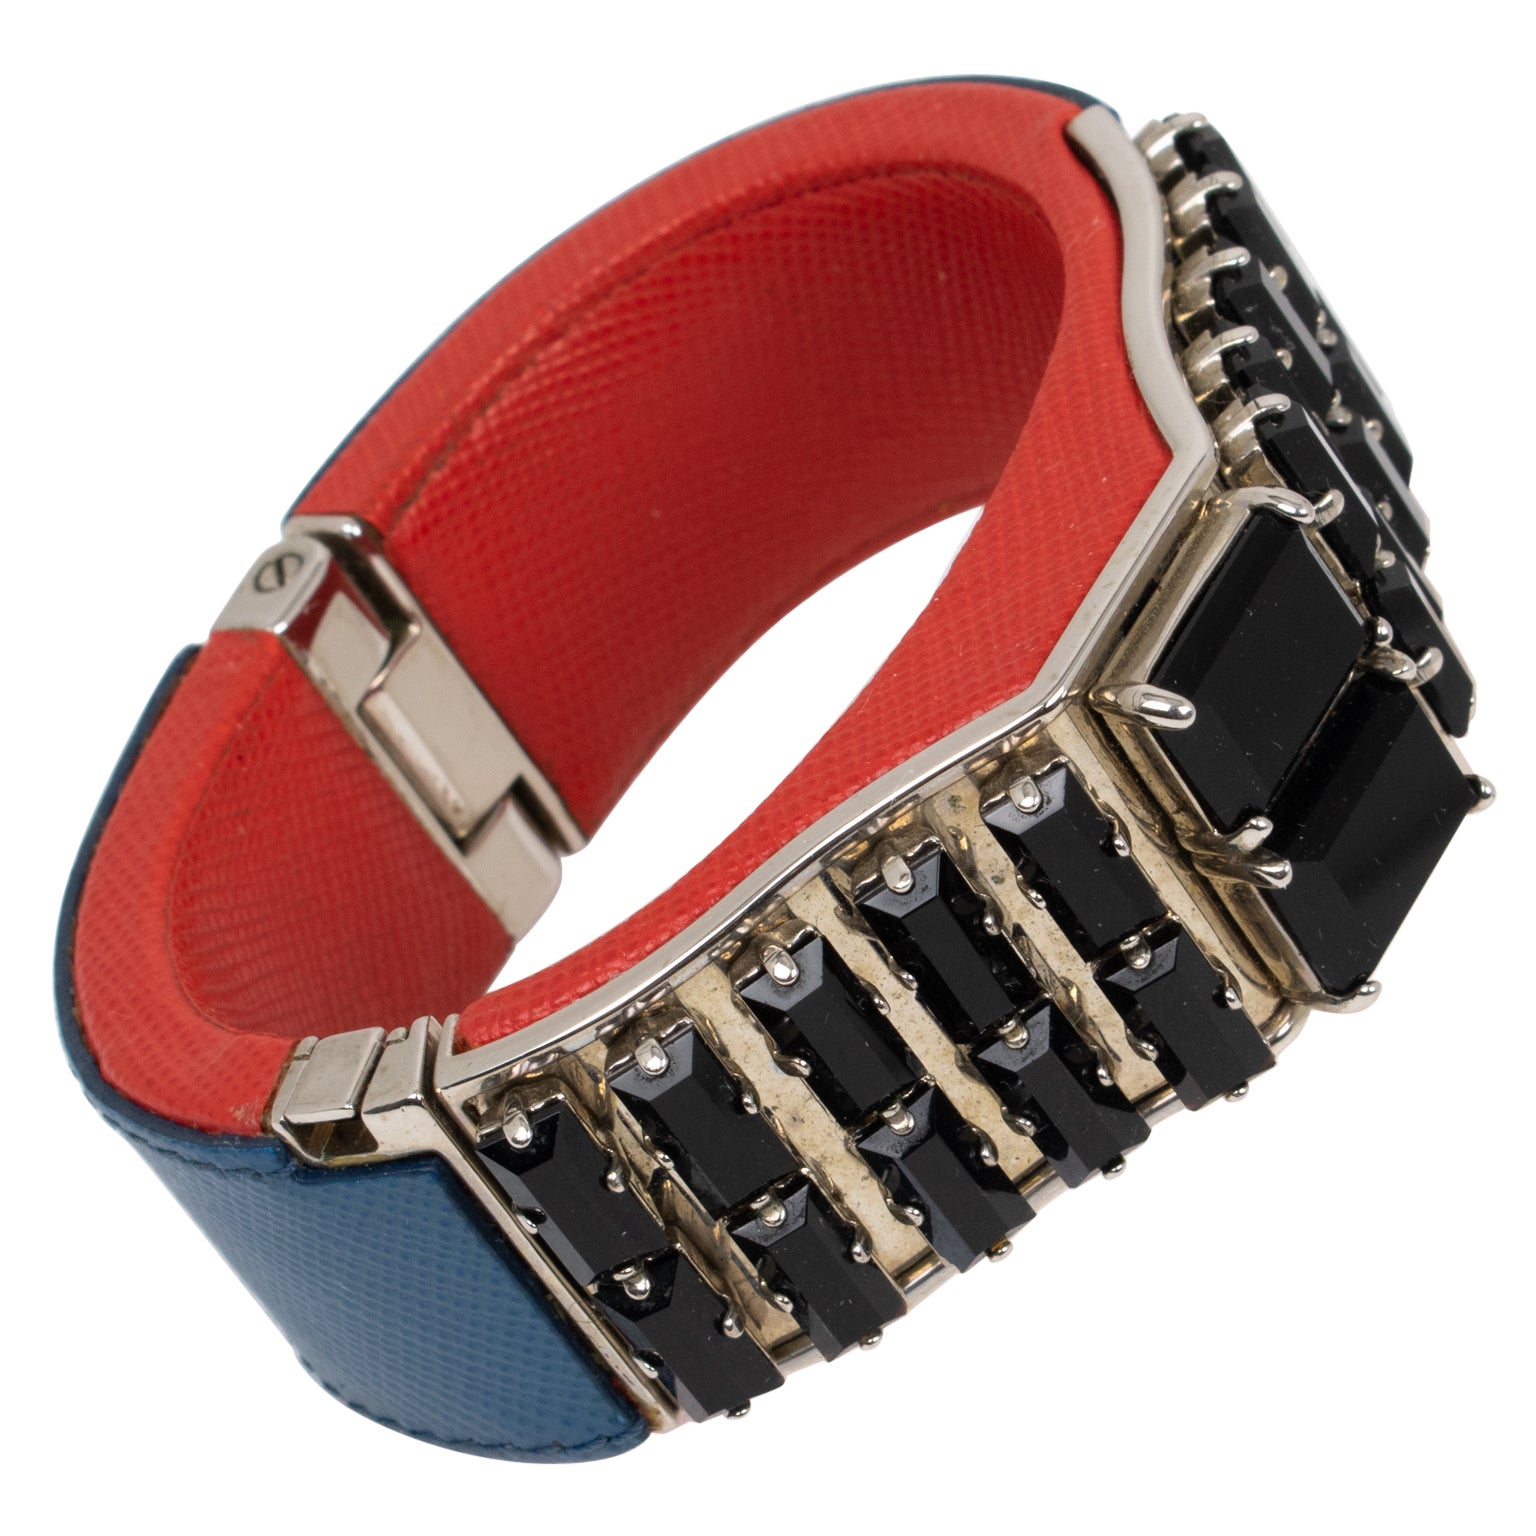 Prada Spring 2014 - Bracelet en cuir Saffiano rouge et bleu avec cristaux noirs